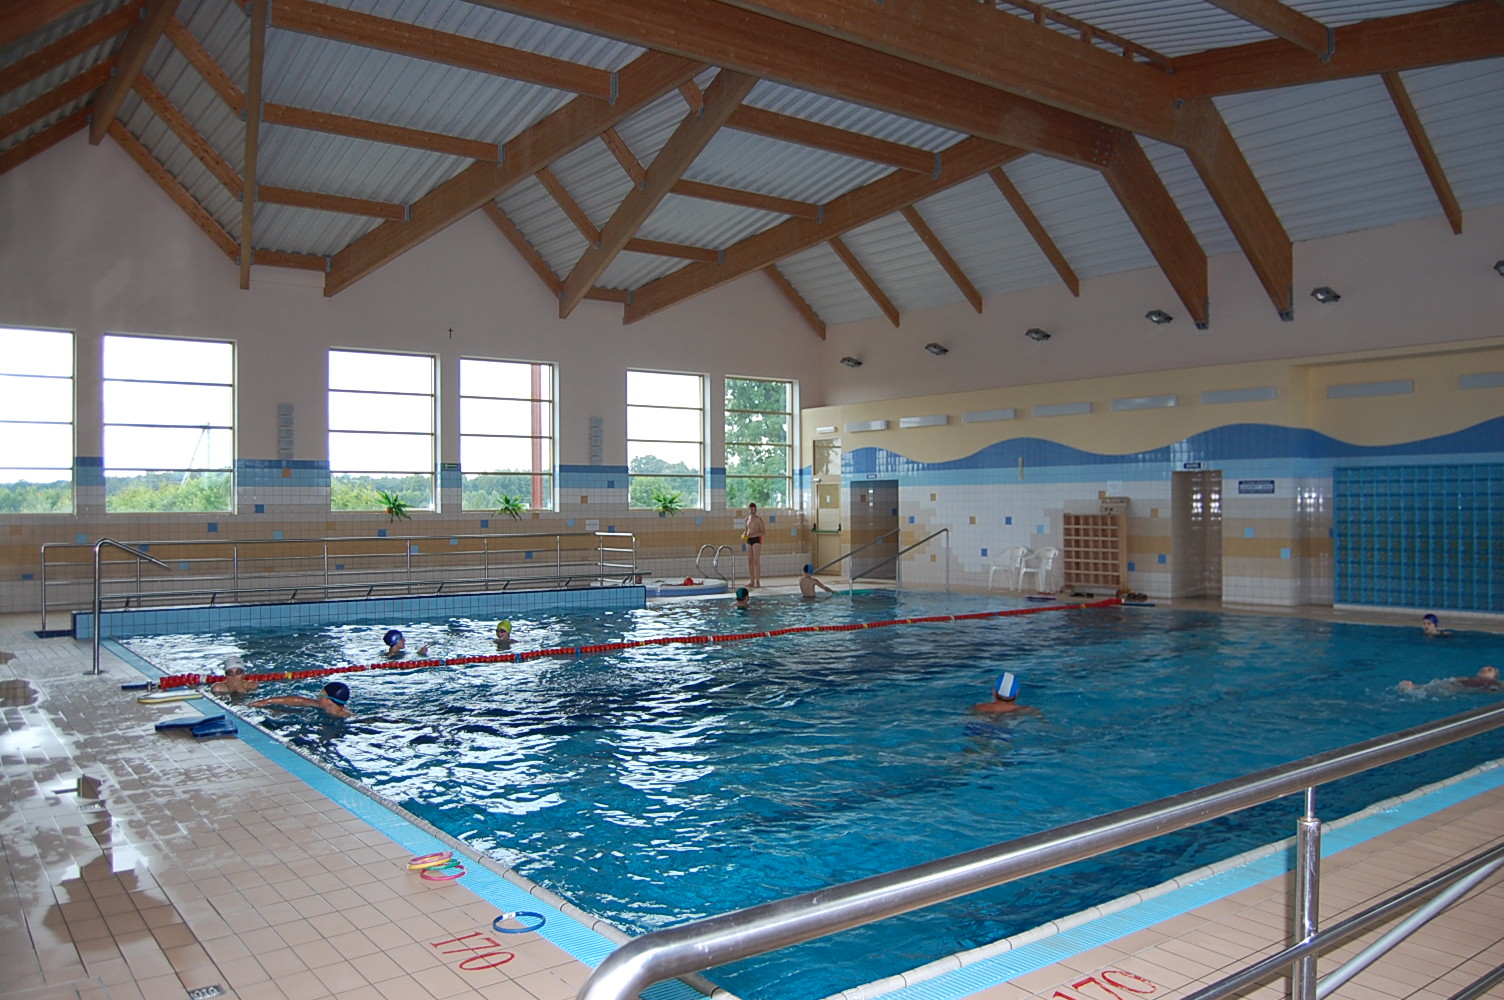 zdjęcie przedstawia basen rehabilitacyjny znajdujący się wewnątrz budynku Ośrodka rehabilitacji w Jadownikach Mokrych.